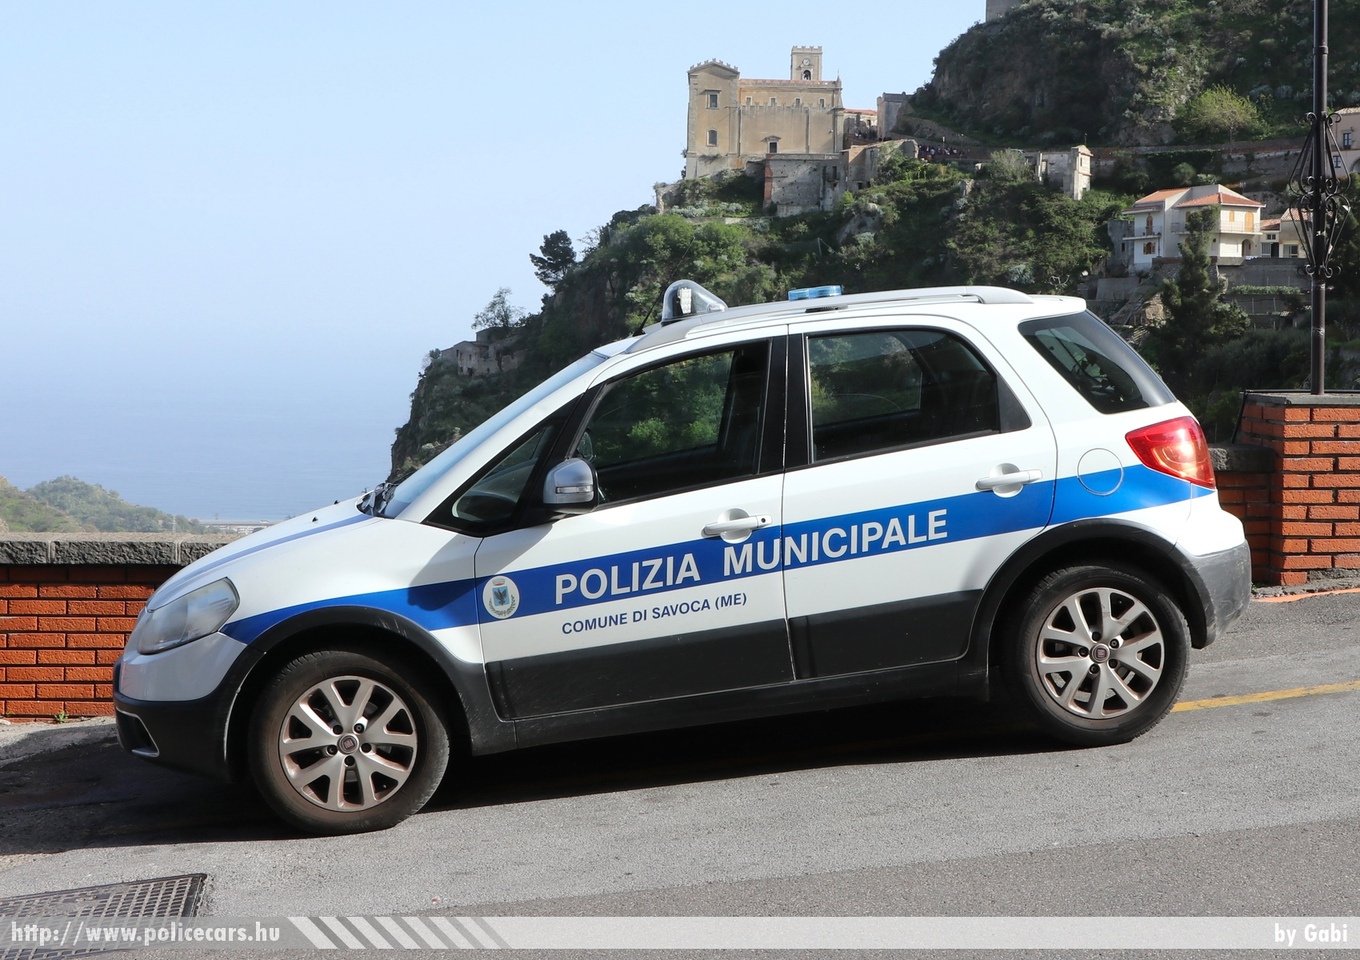 Fiat Sedici, Polizia Municipale Comune di Savoca (ME), fotó: Gabi
Keywords: rendőr rendőrautó rendőrség olasz Olaszország police policecar Italy italian